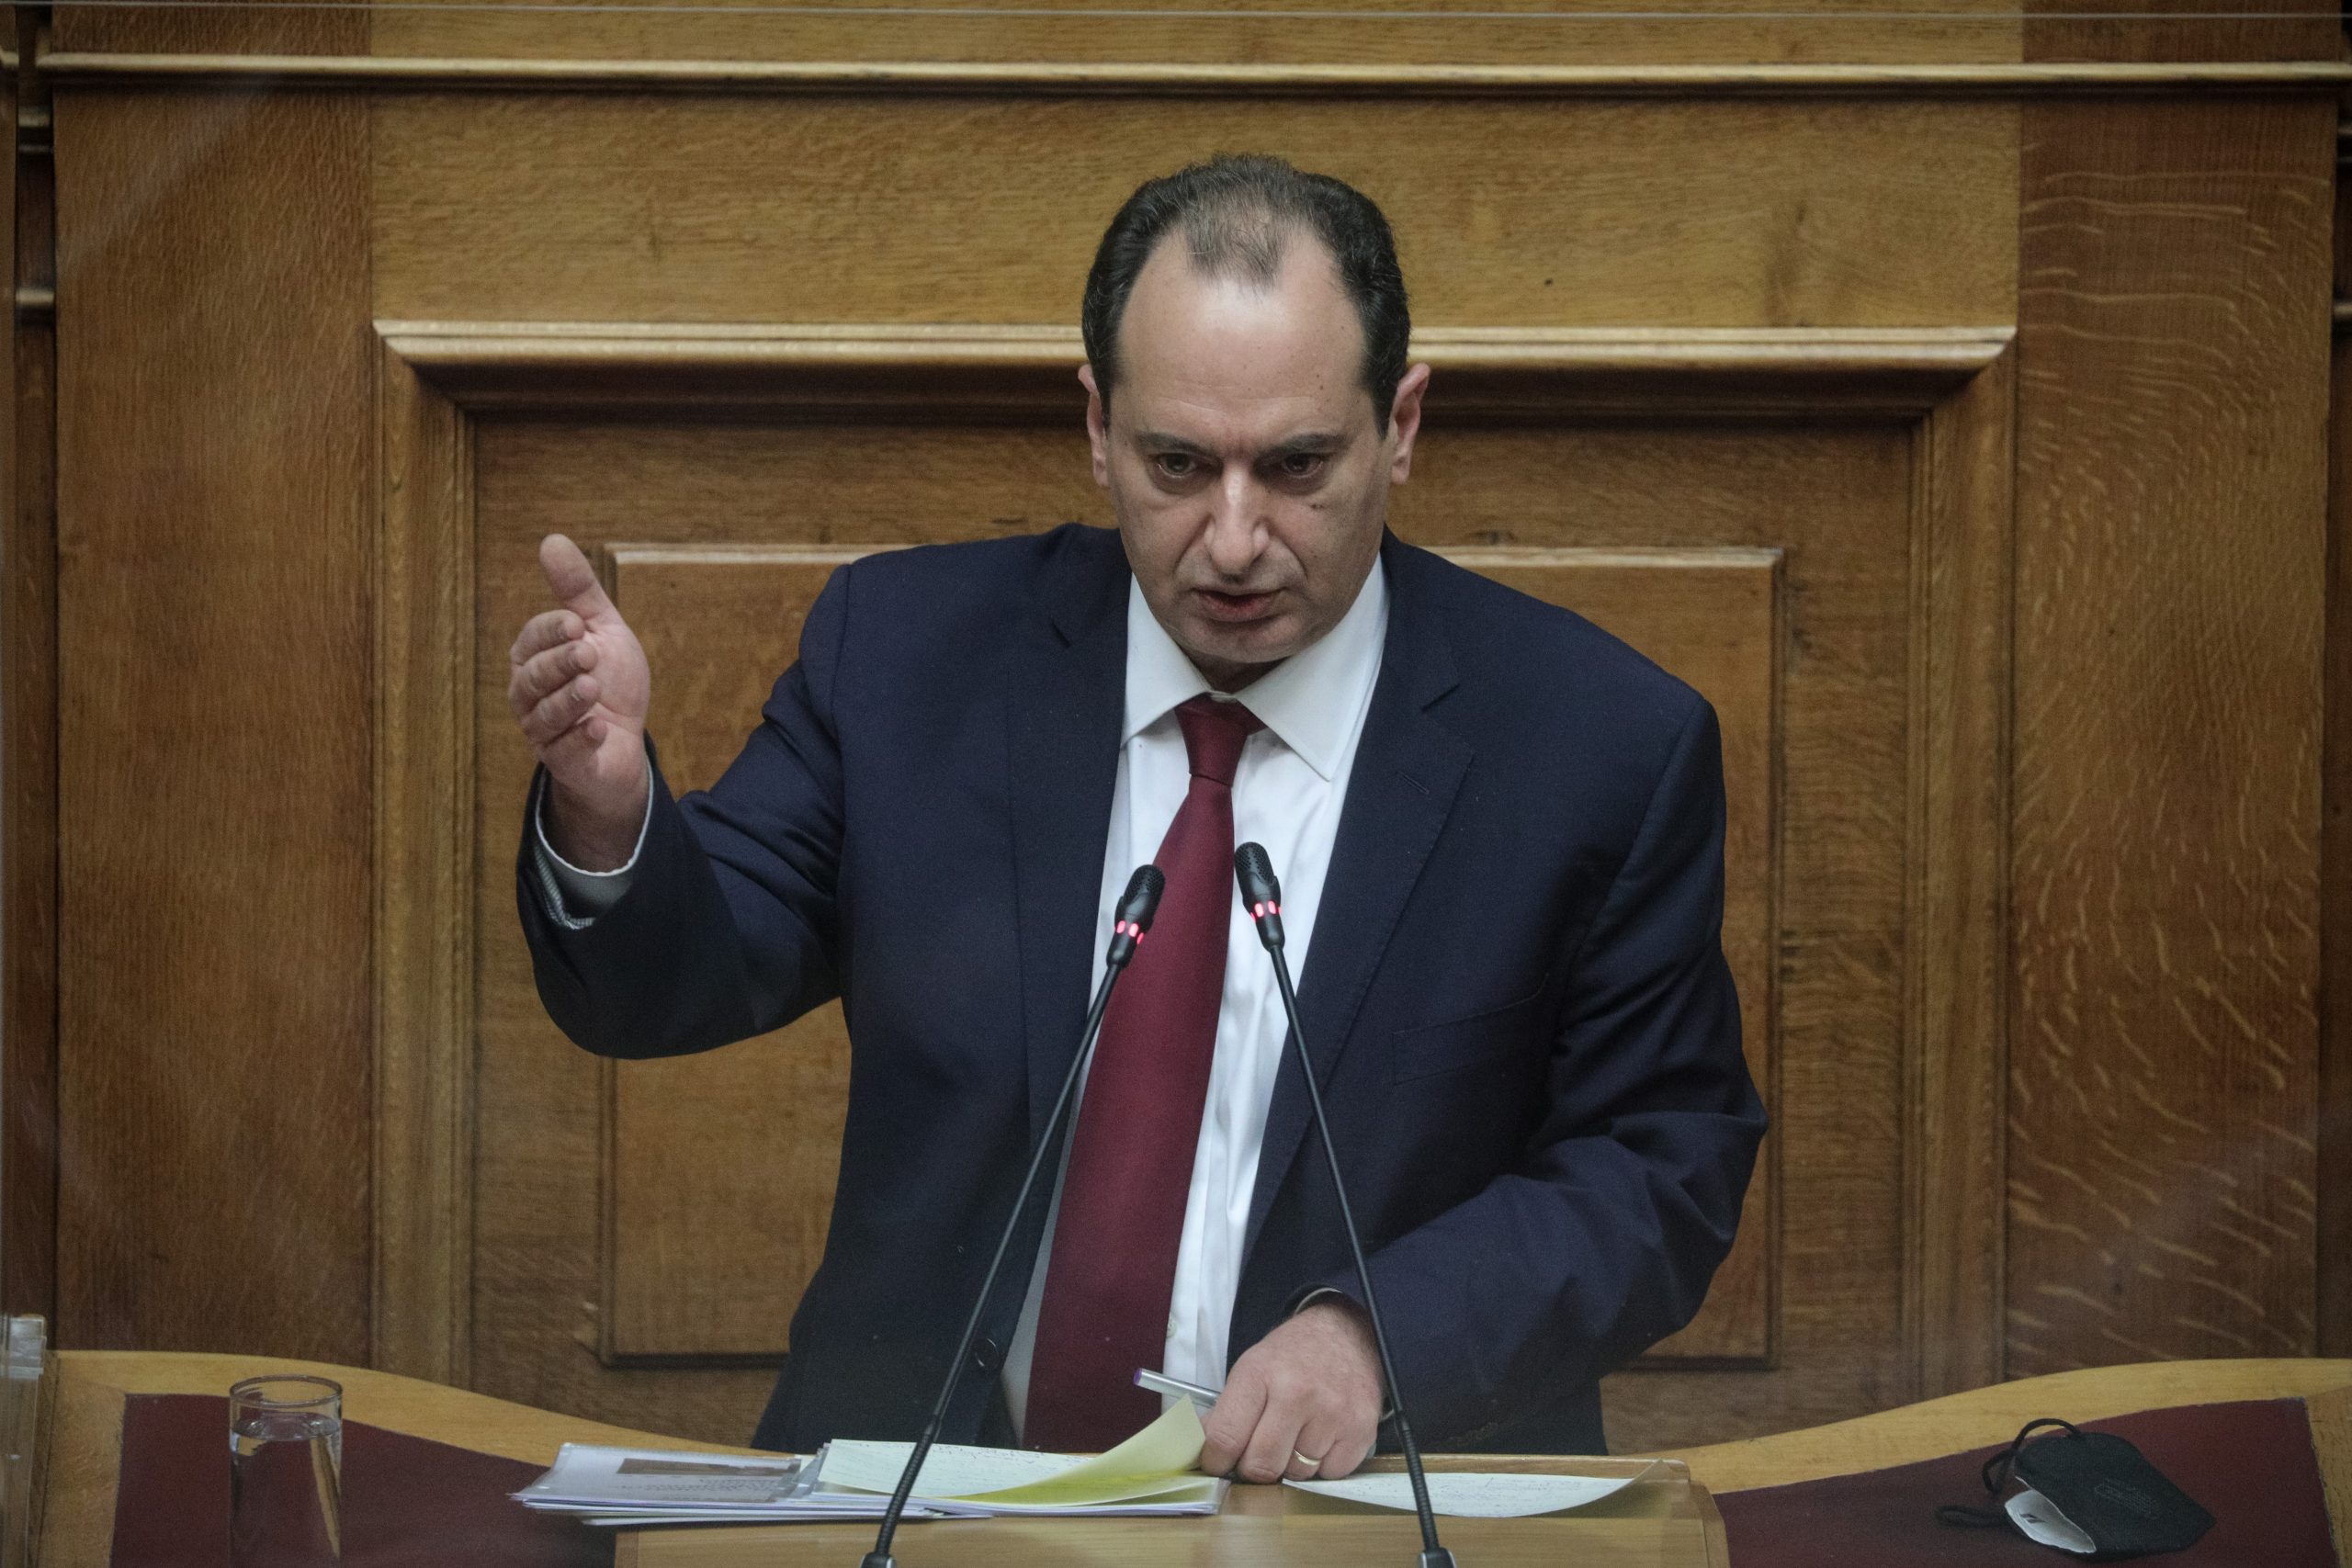 Χρ. Σπίρτζης: Μέλος της πολιτικής ηγεσίας του Υπουργείου ΠροΠο μιλούσε με τη Greek Mafia